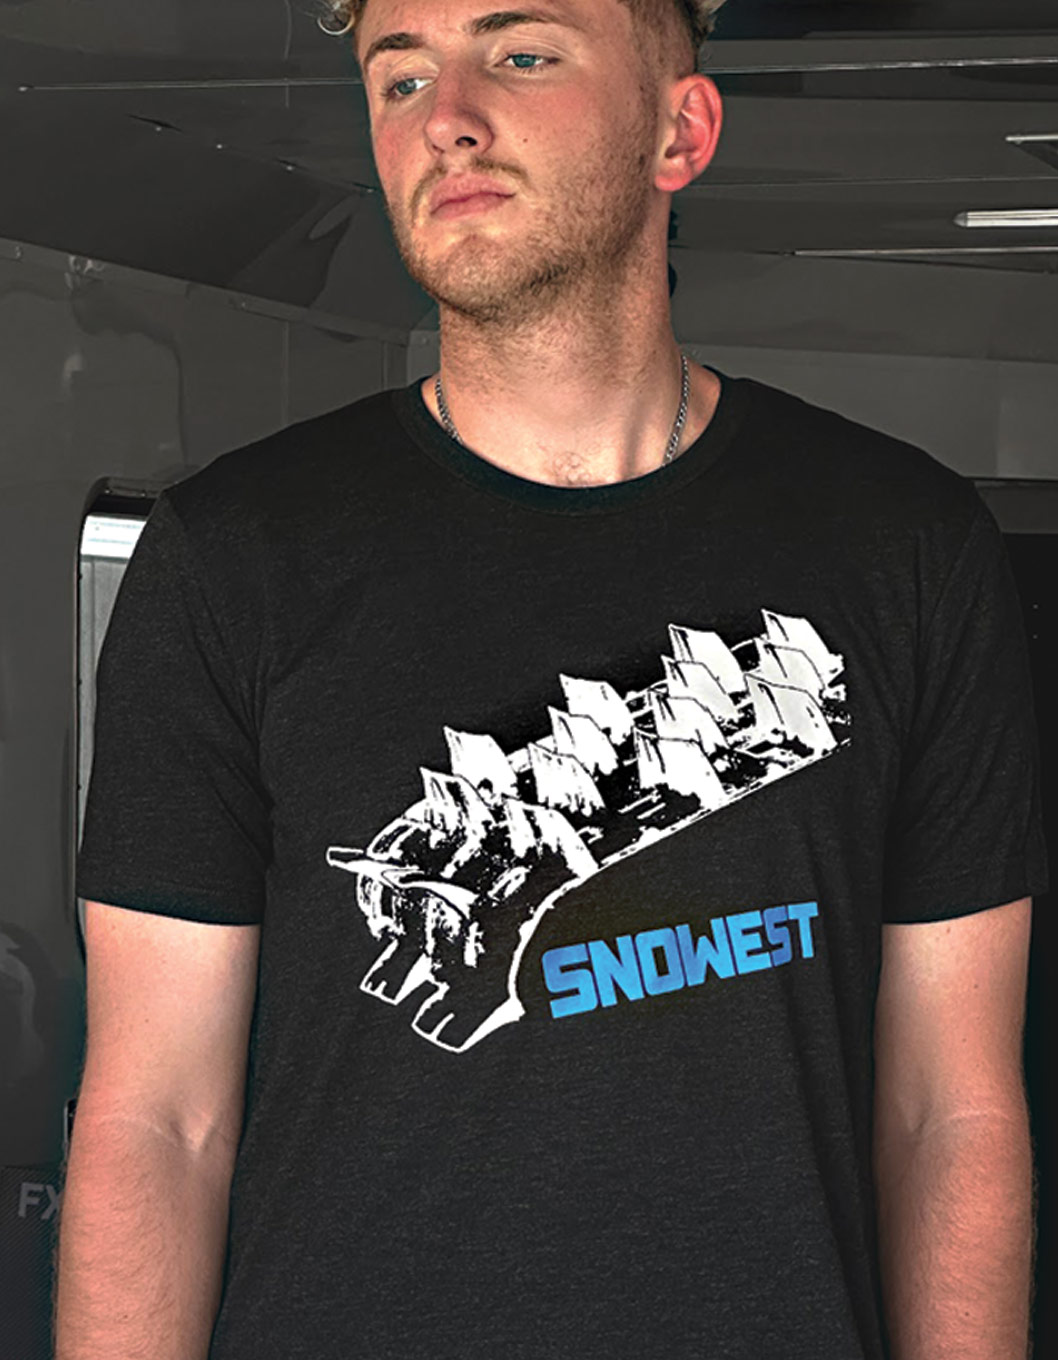 man wearing a SnoWest shirt